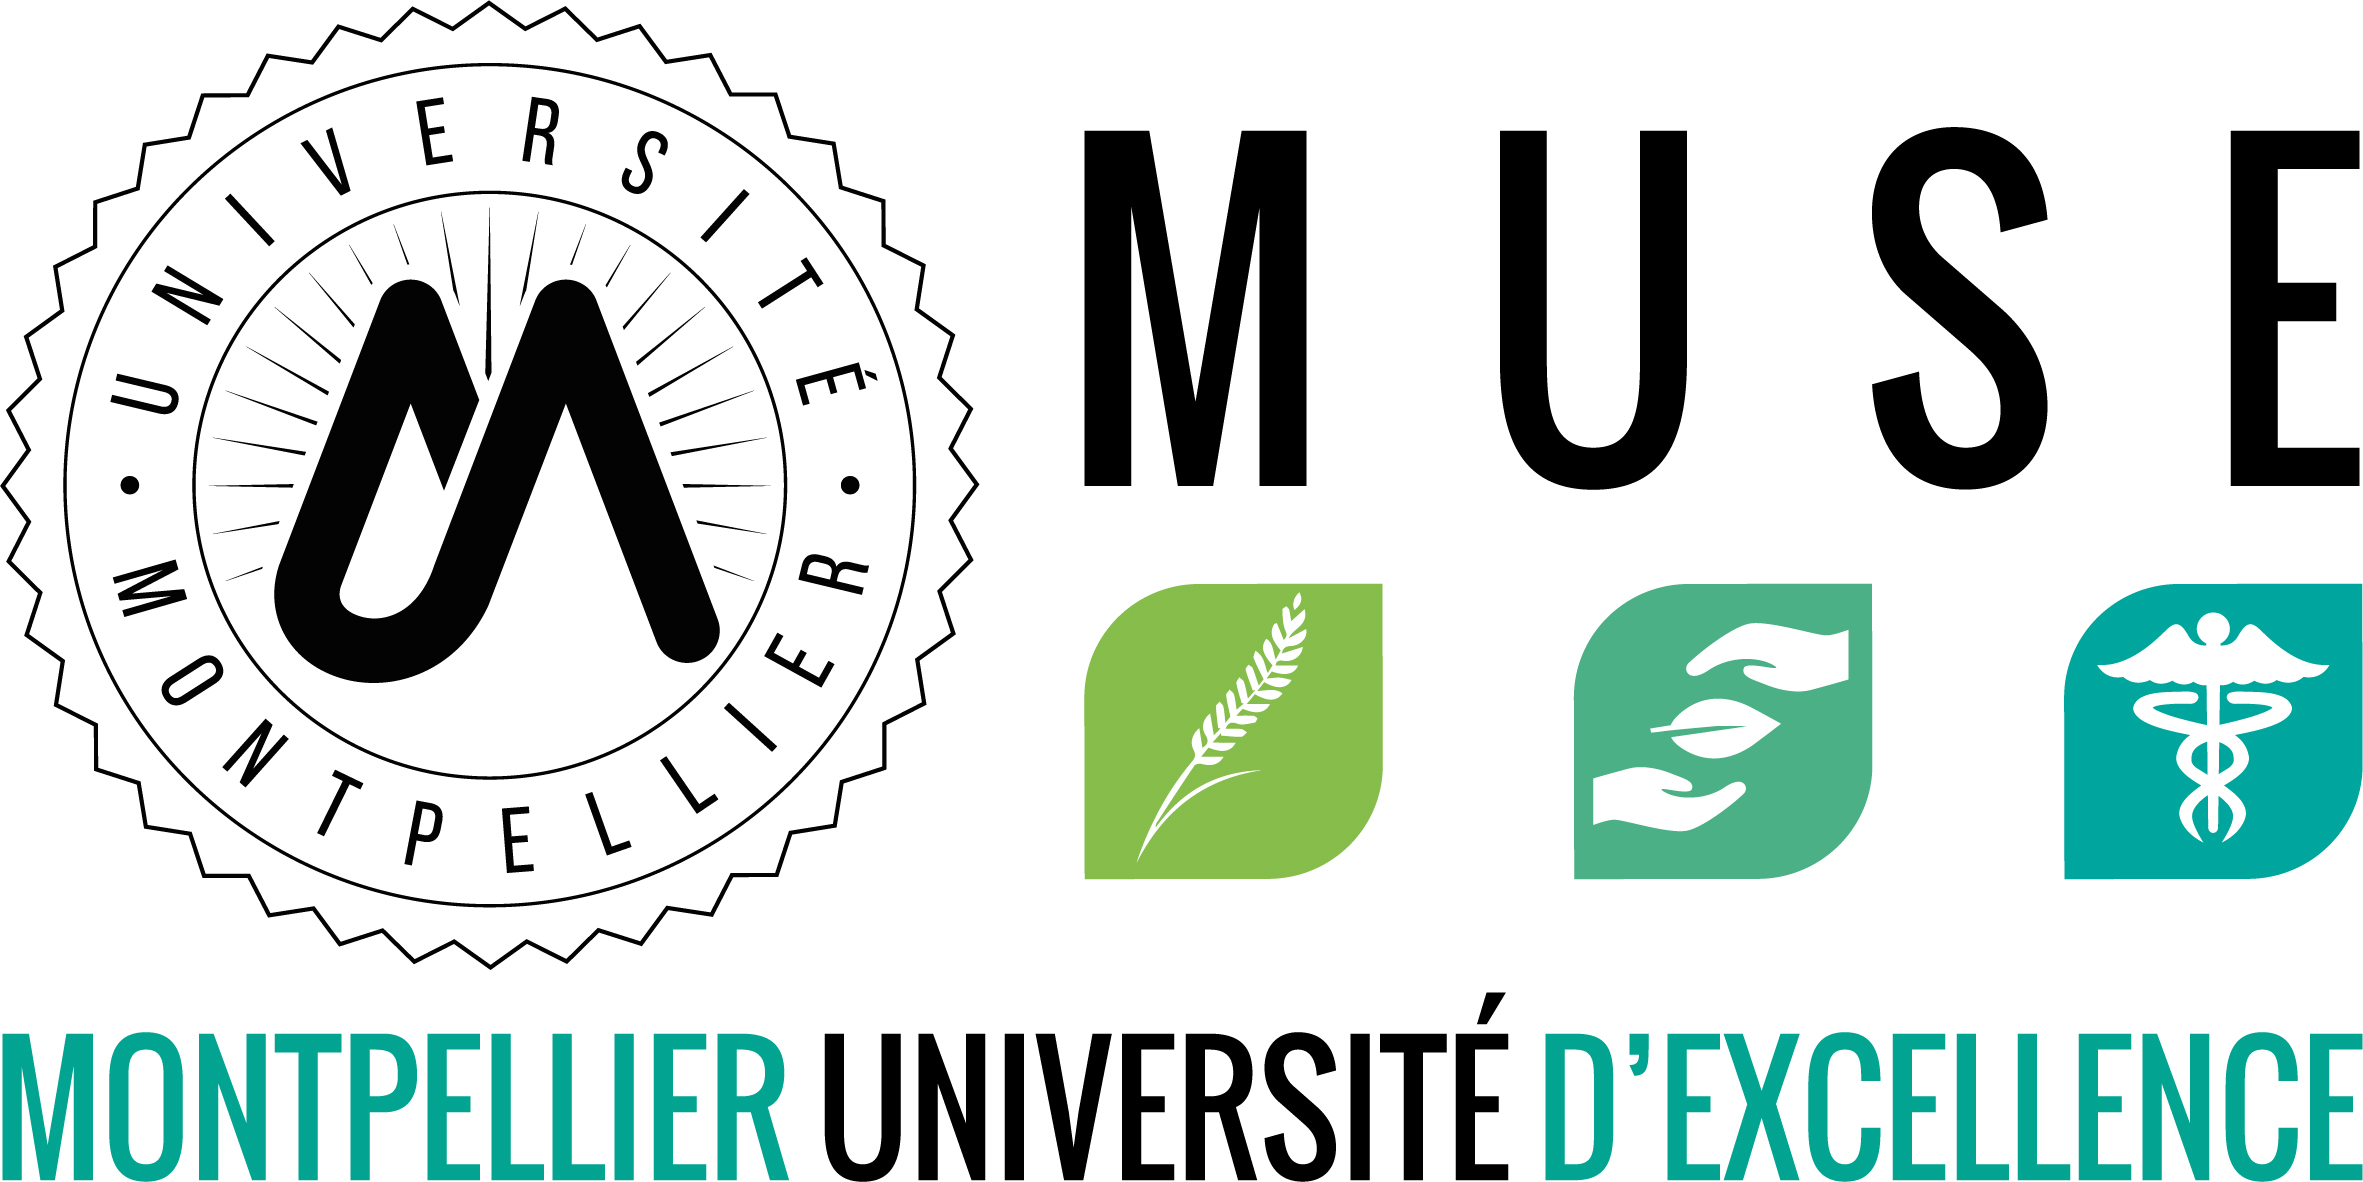 Montpellier Universite d'excellence